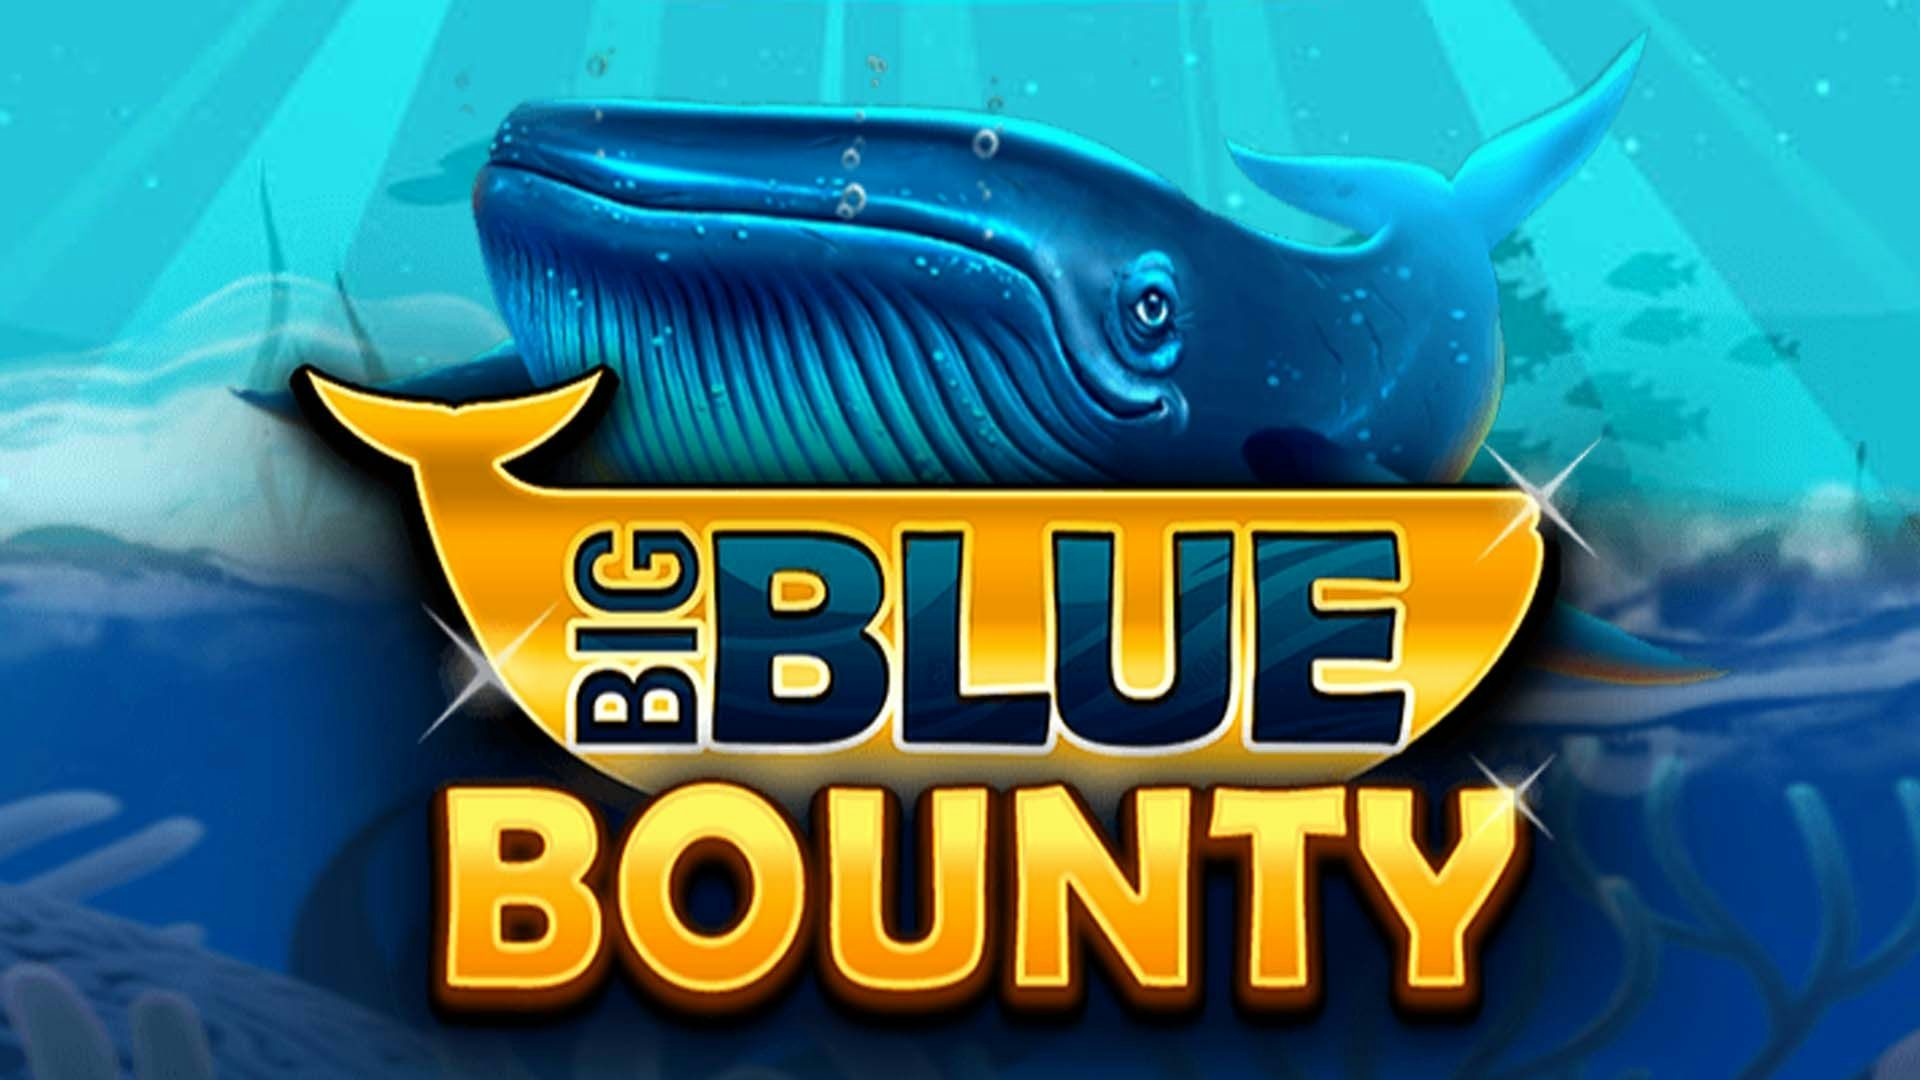 Big Blue Bounty